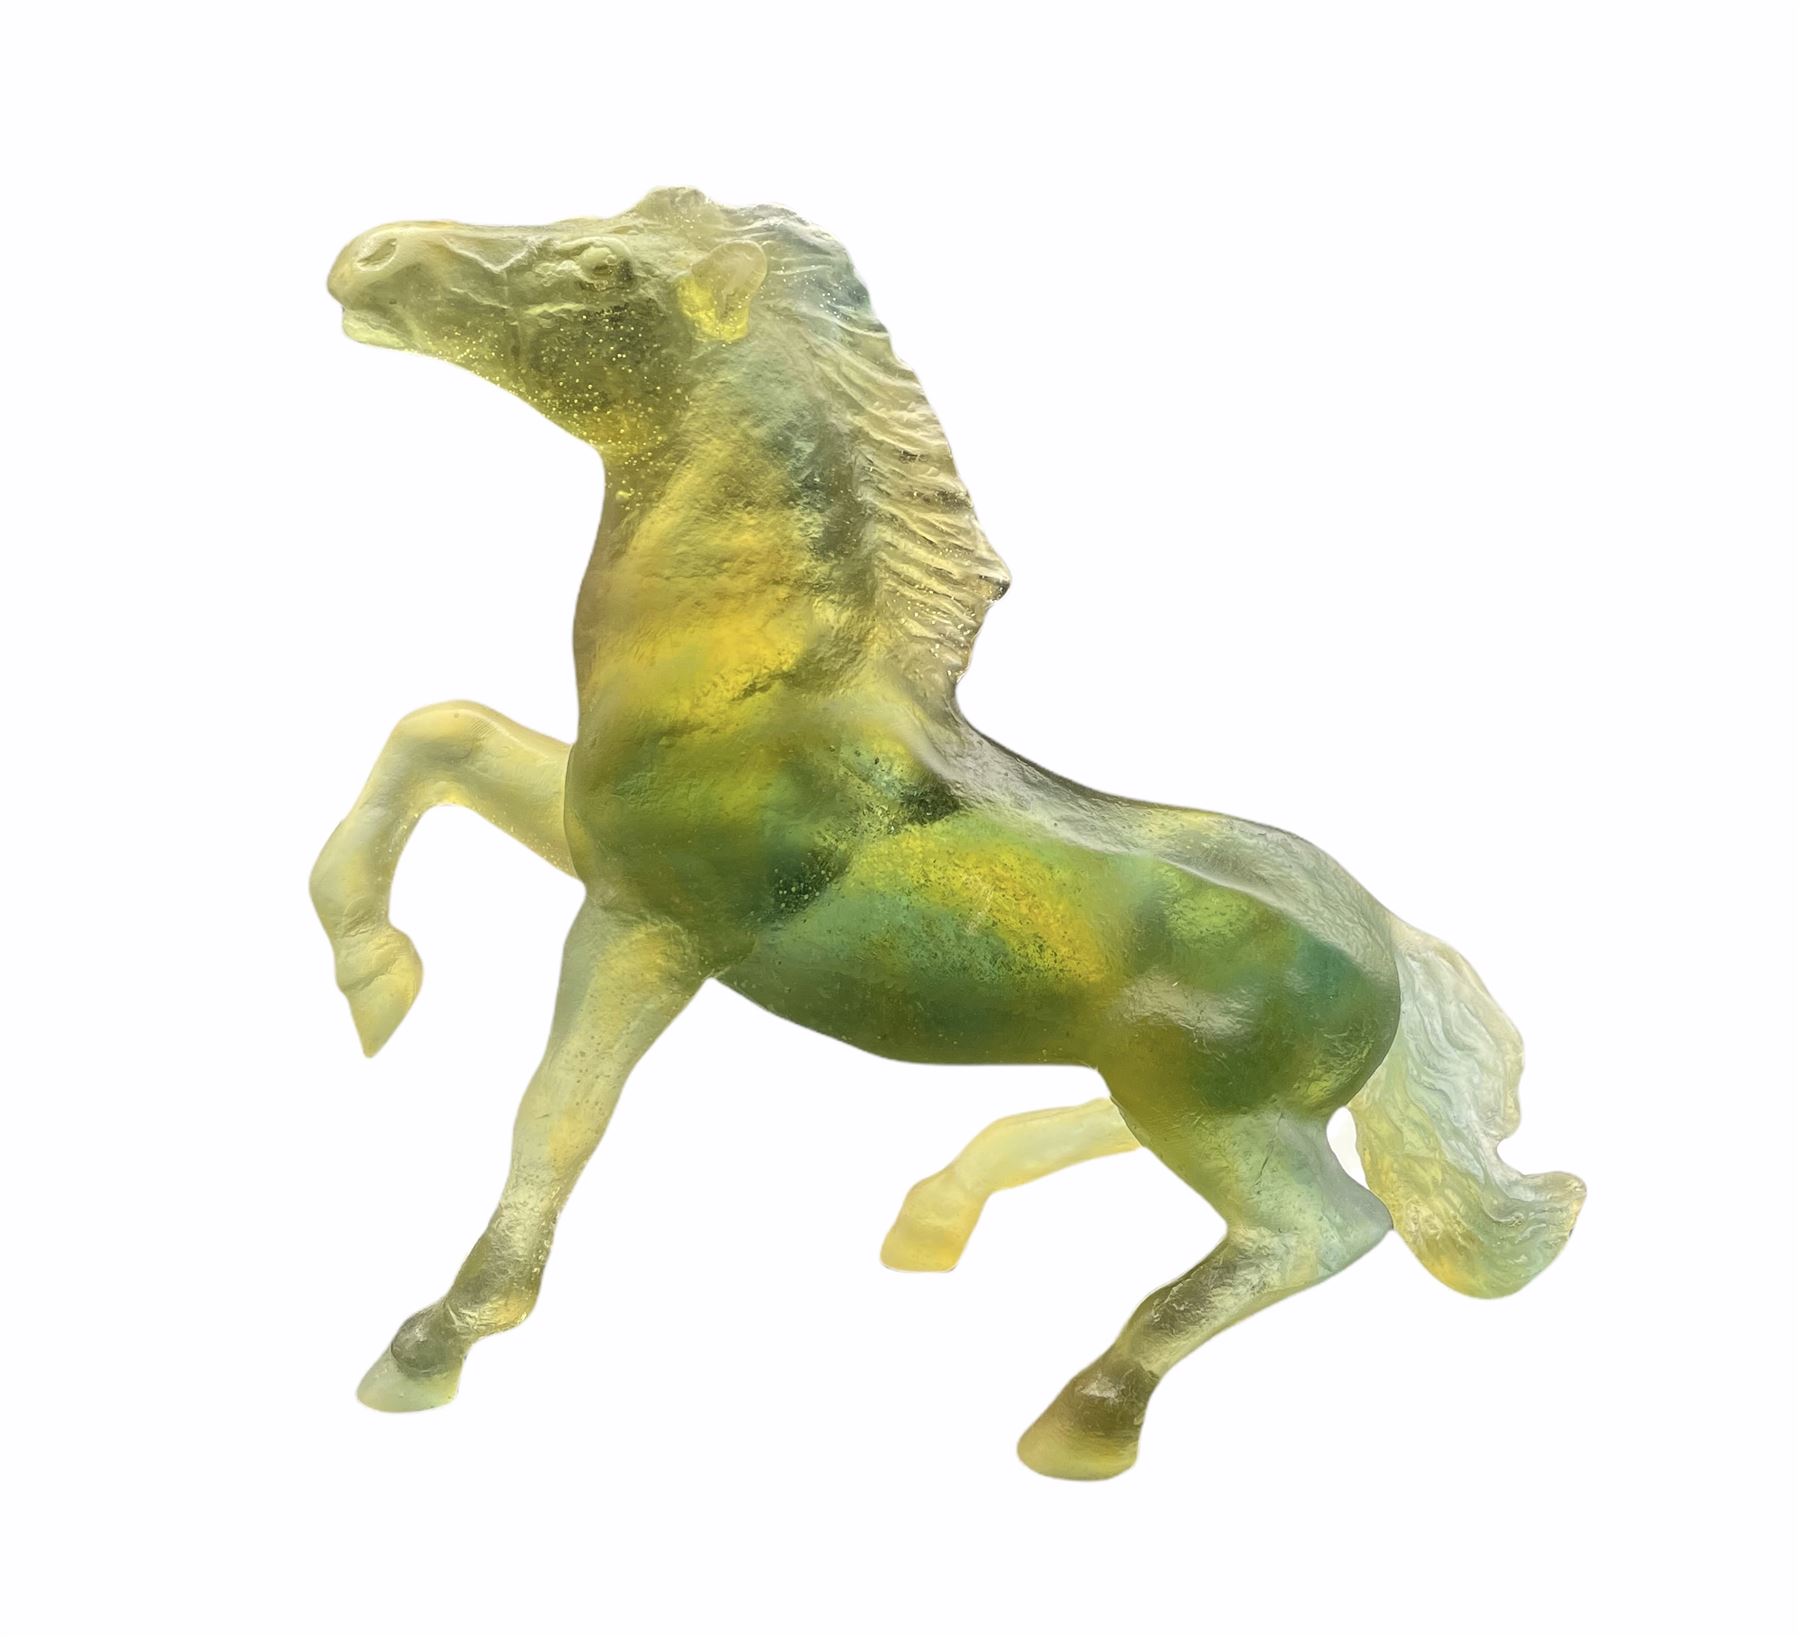 Daum Pate de Verre model of a prancing horse in tonal green and amber